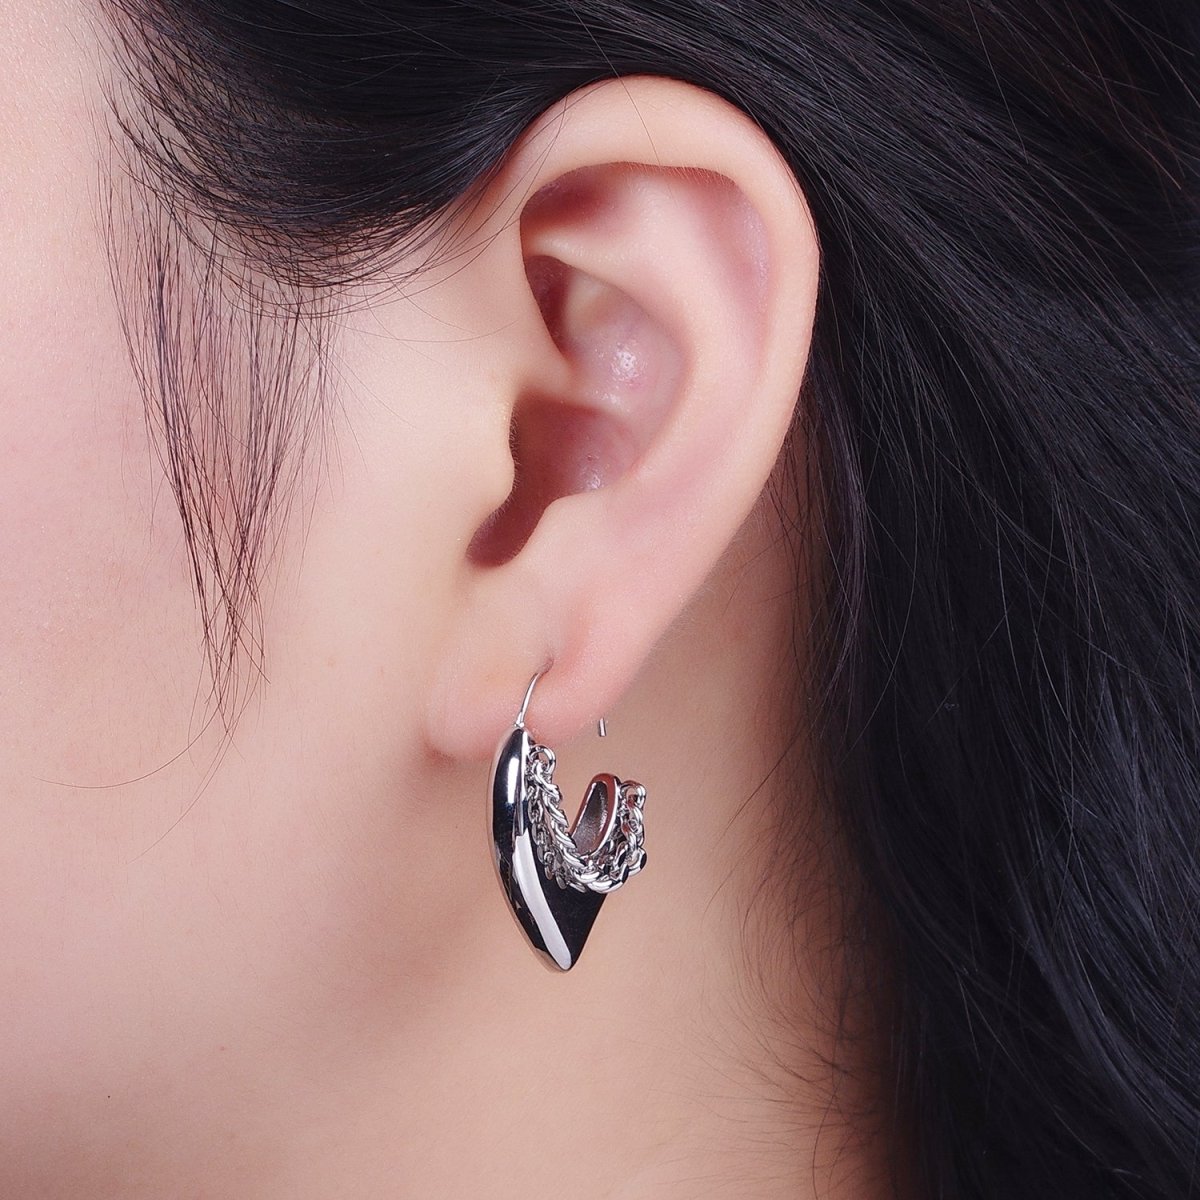 24K Gold Filled Geometric Hanging Heart Earring Open Hoop Stud Earrings in Gold Silver P-283 P-284 - DLUXCA